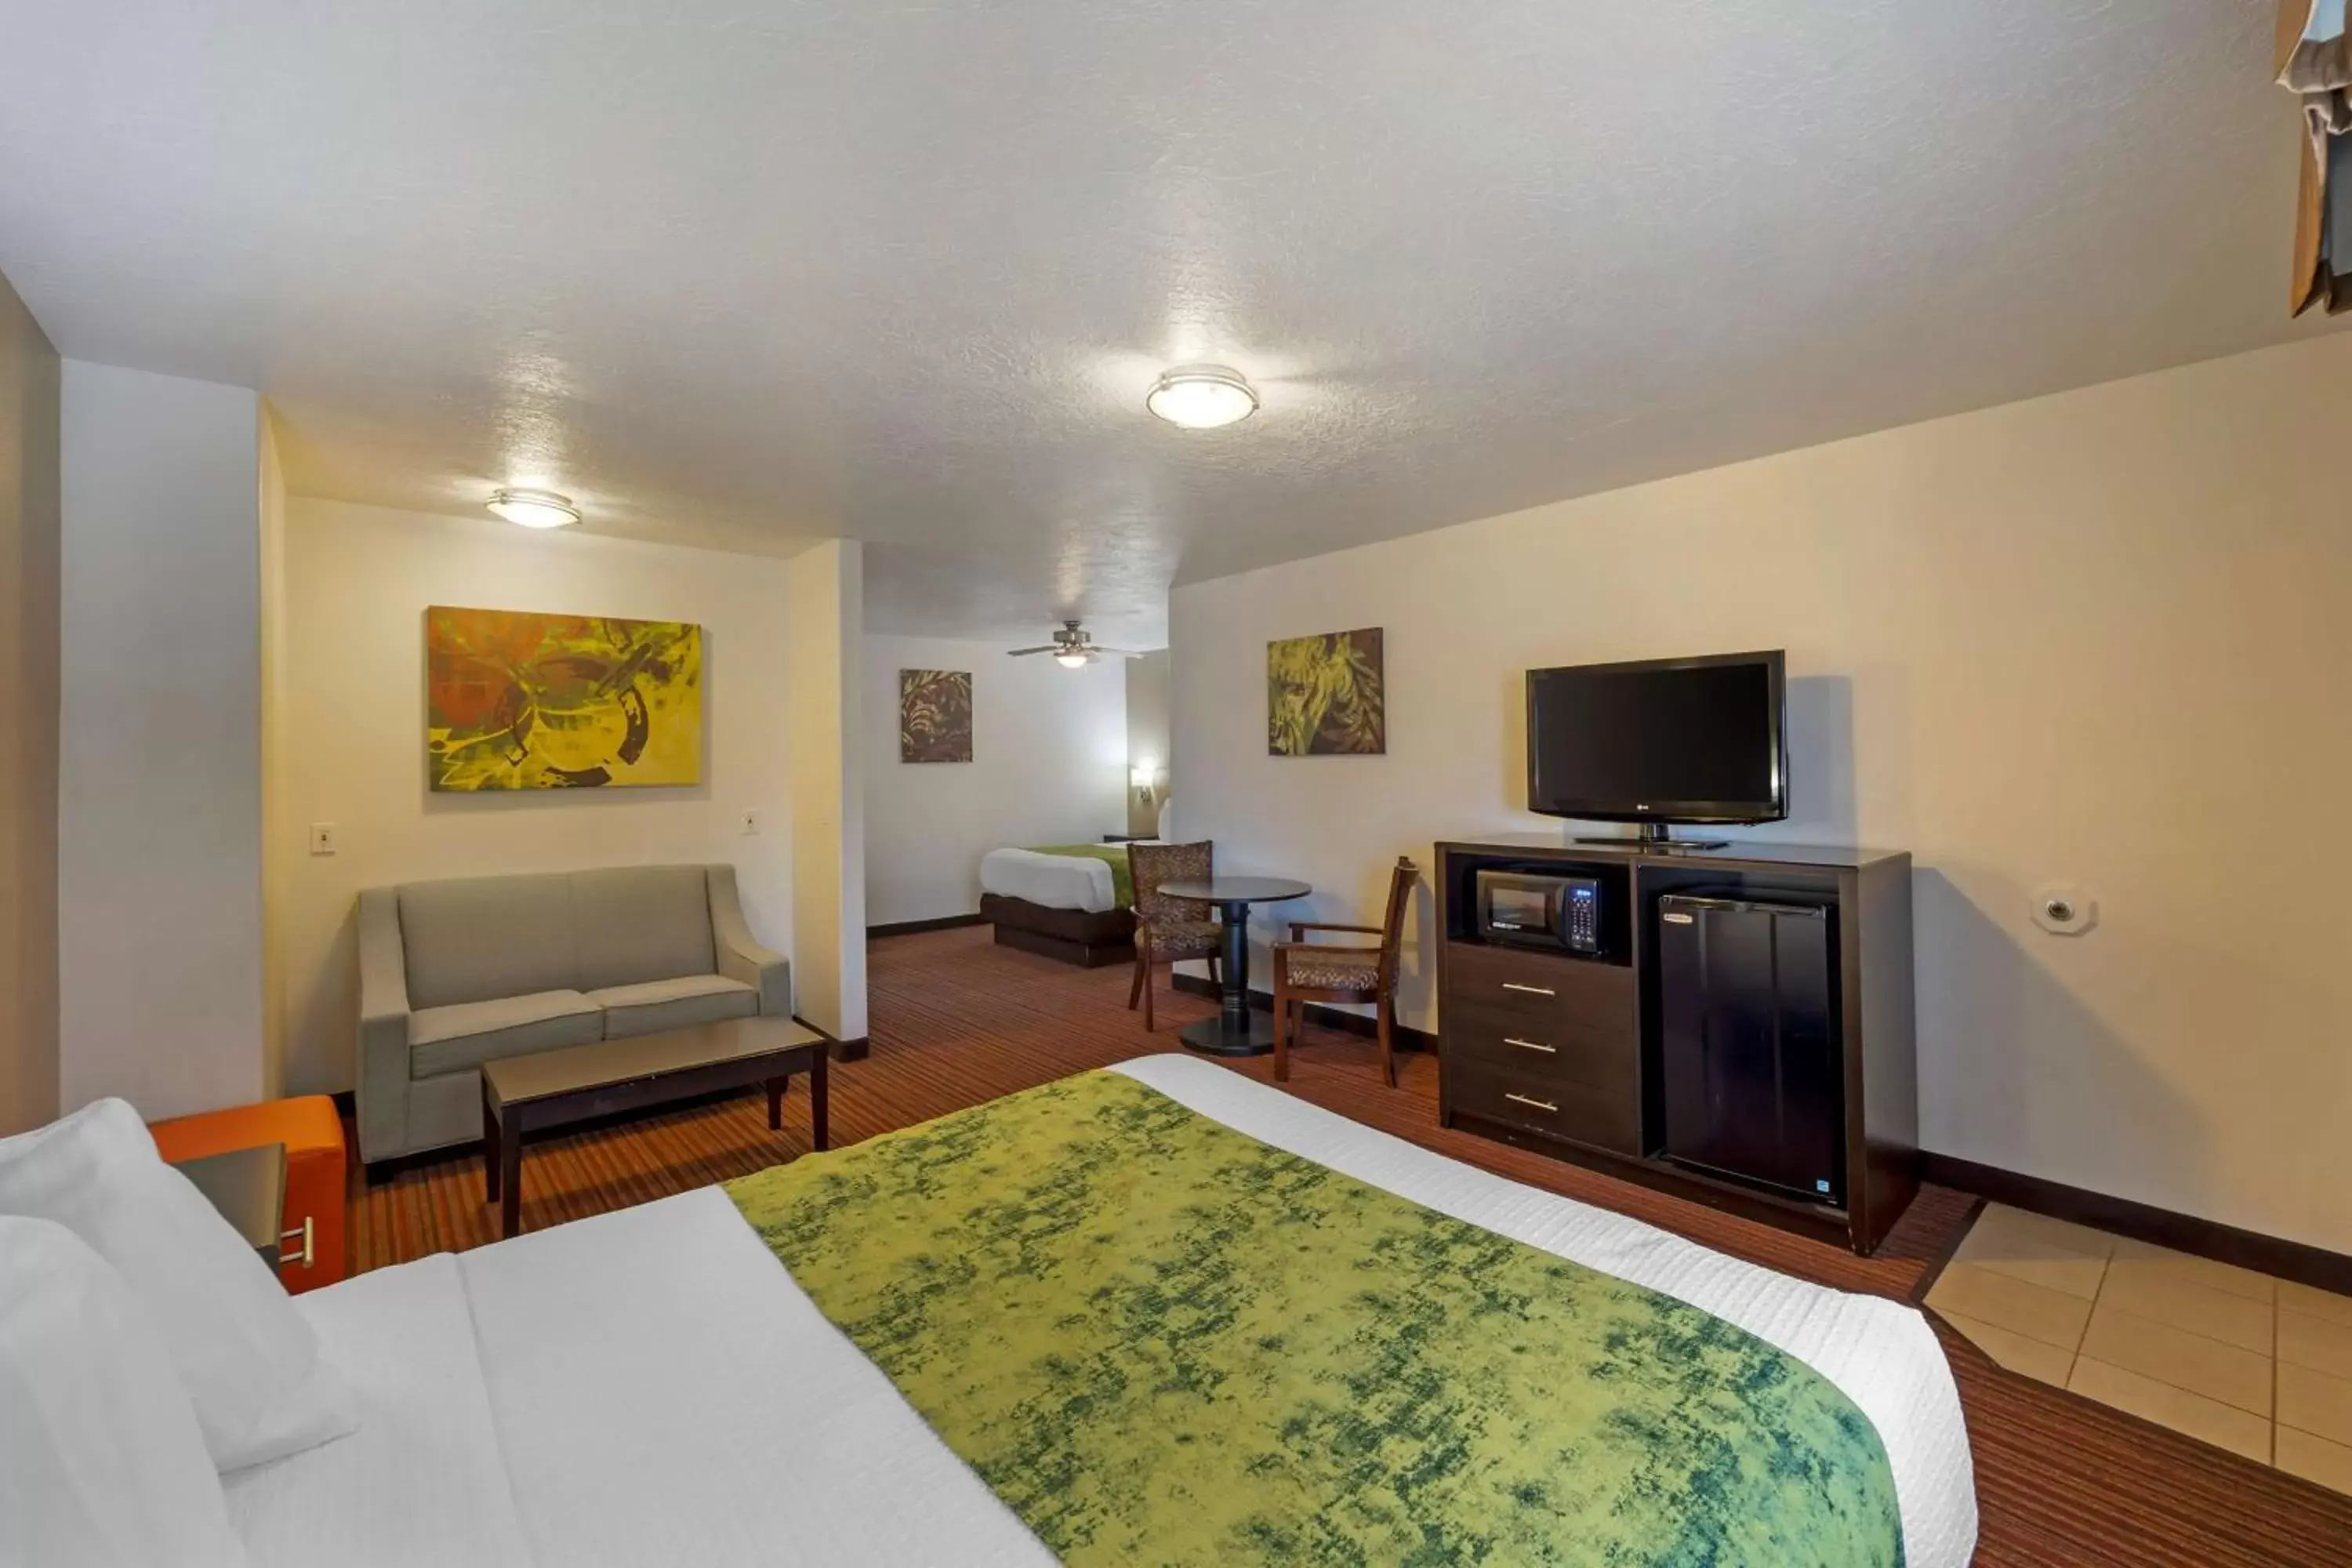 Bedroom, TV/Entertainment Center in Best Western Mesquite Inn